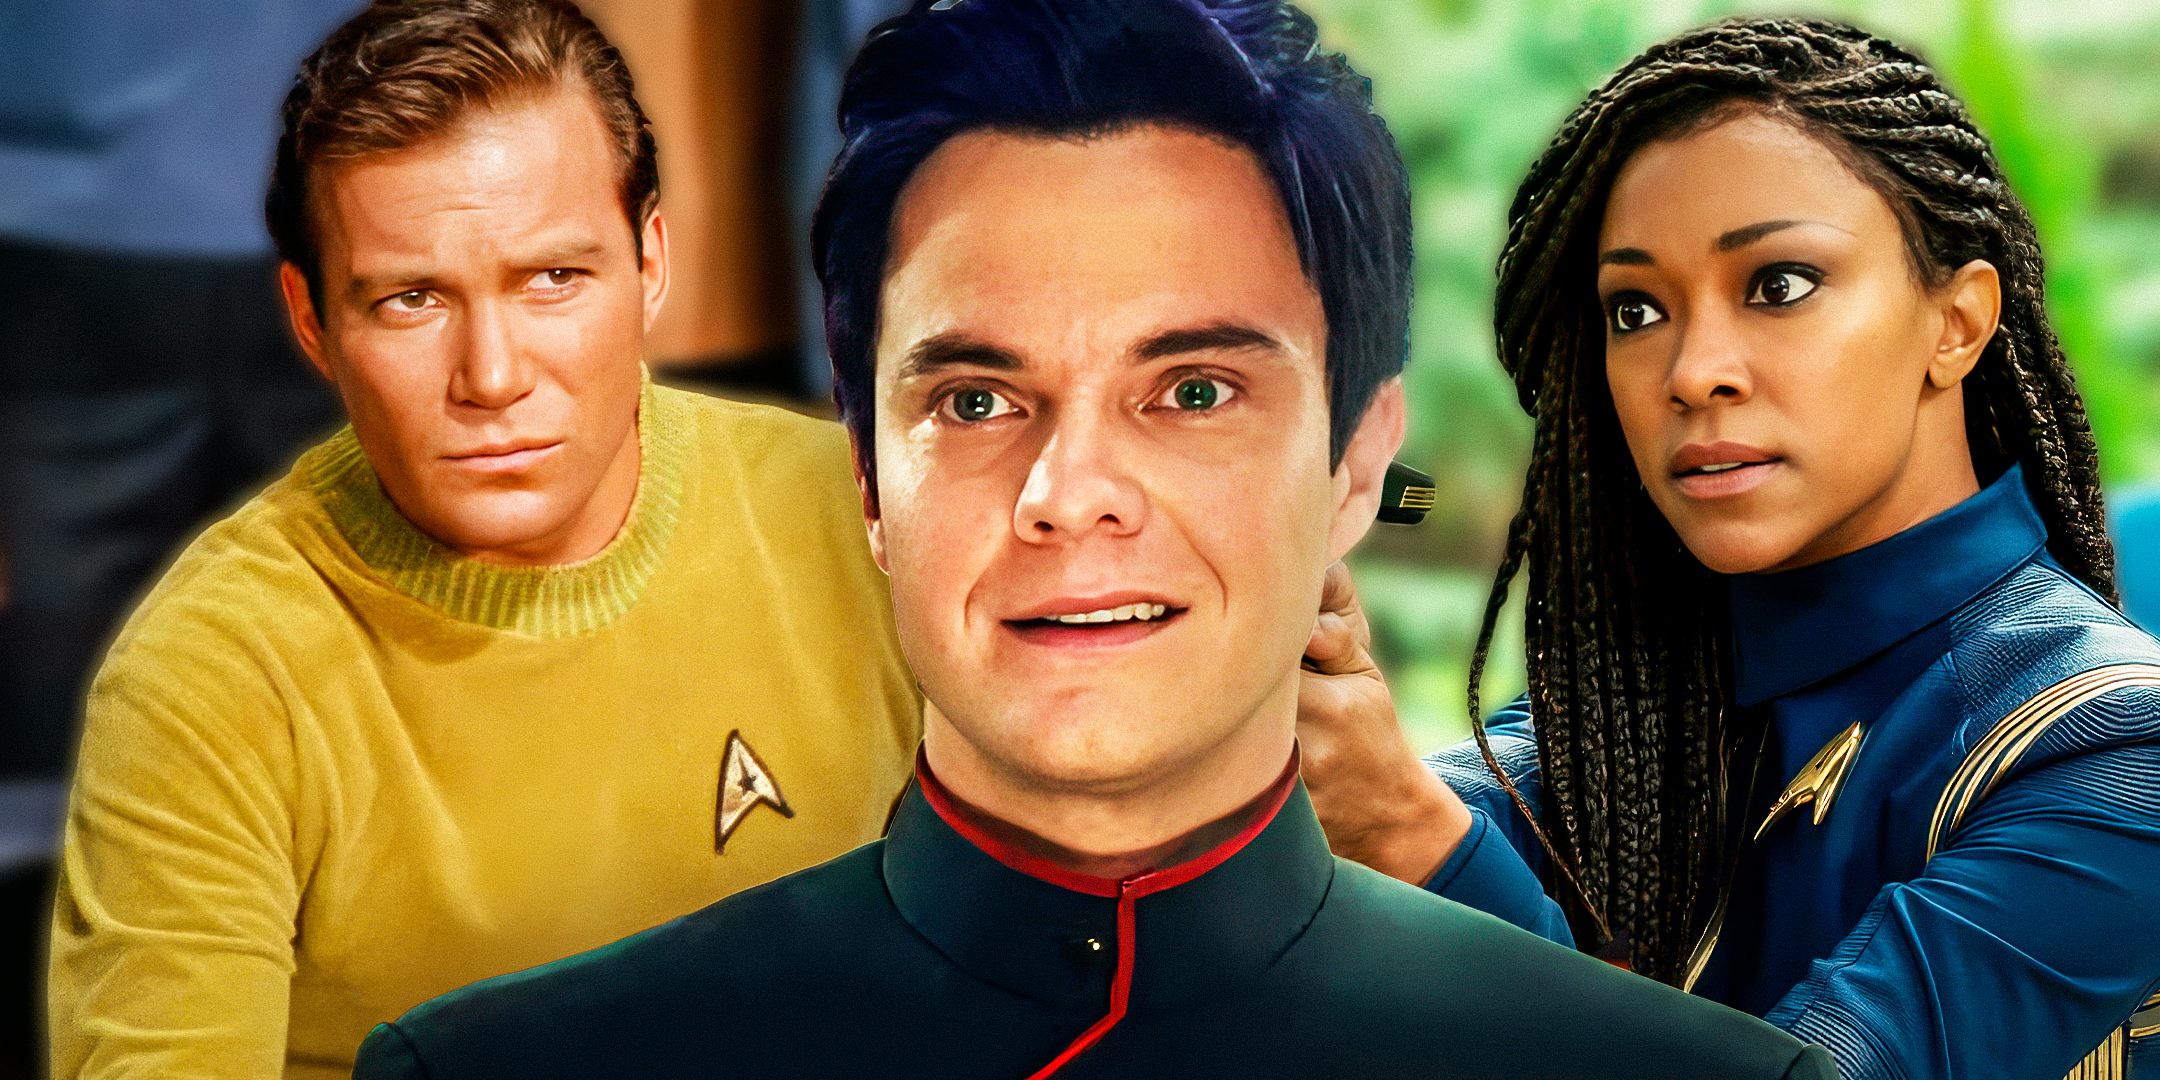 Star Trek's Captain Kirk, Ensign Boimler, and Captain Michael Burnham